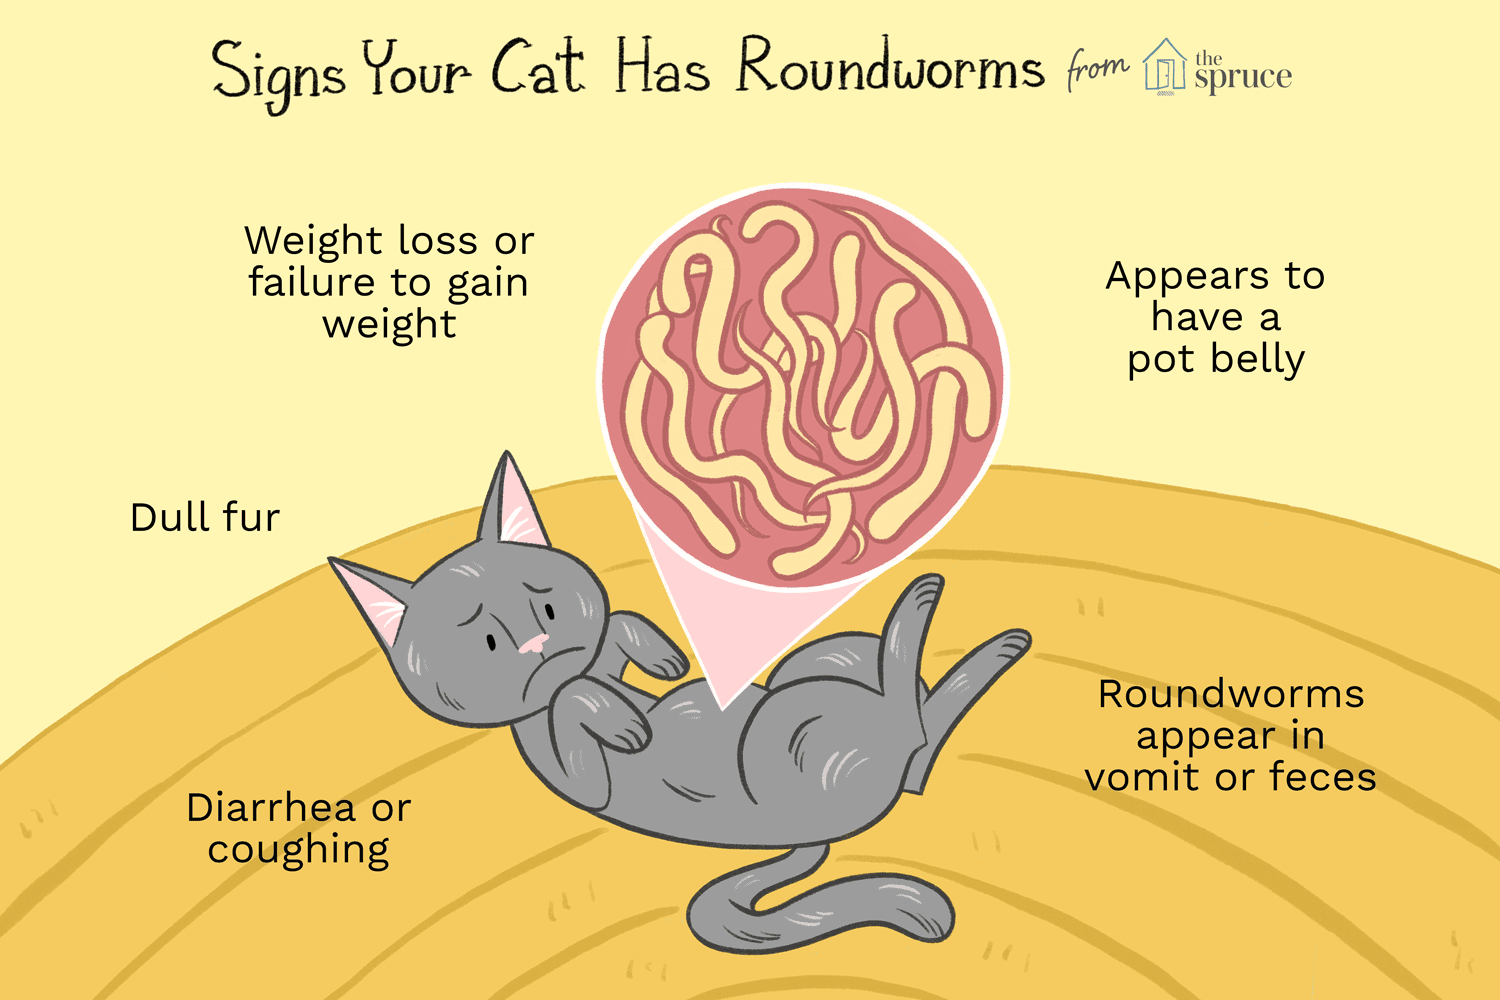 Roundworm symptoms